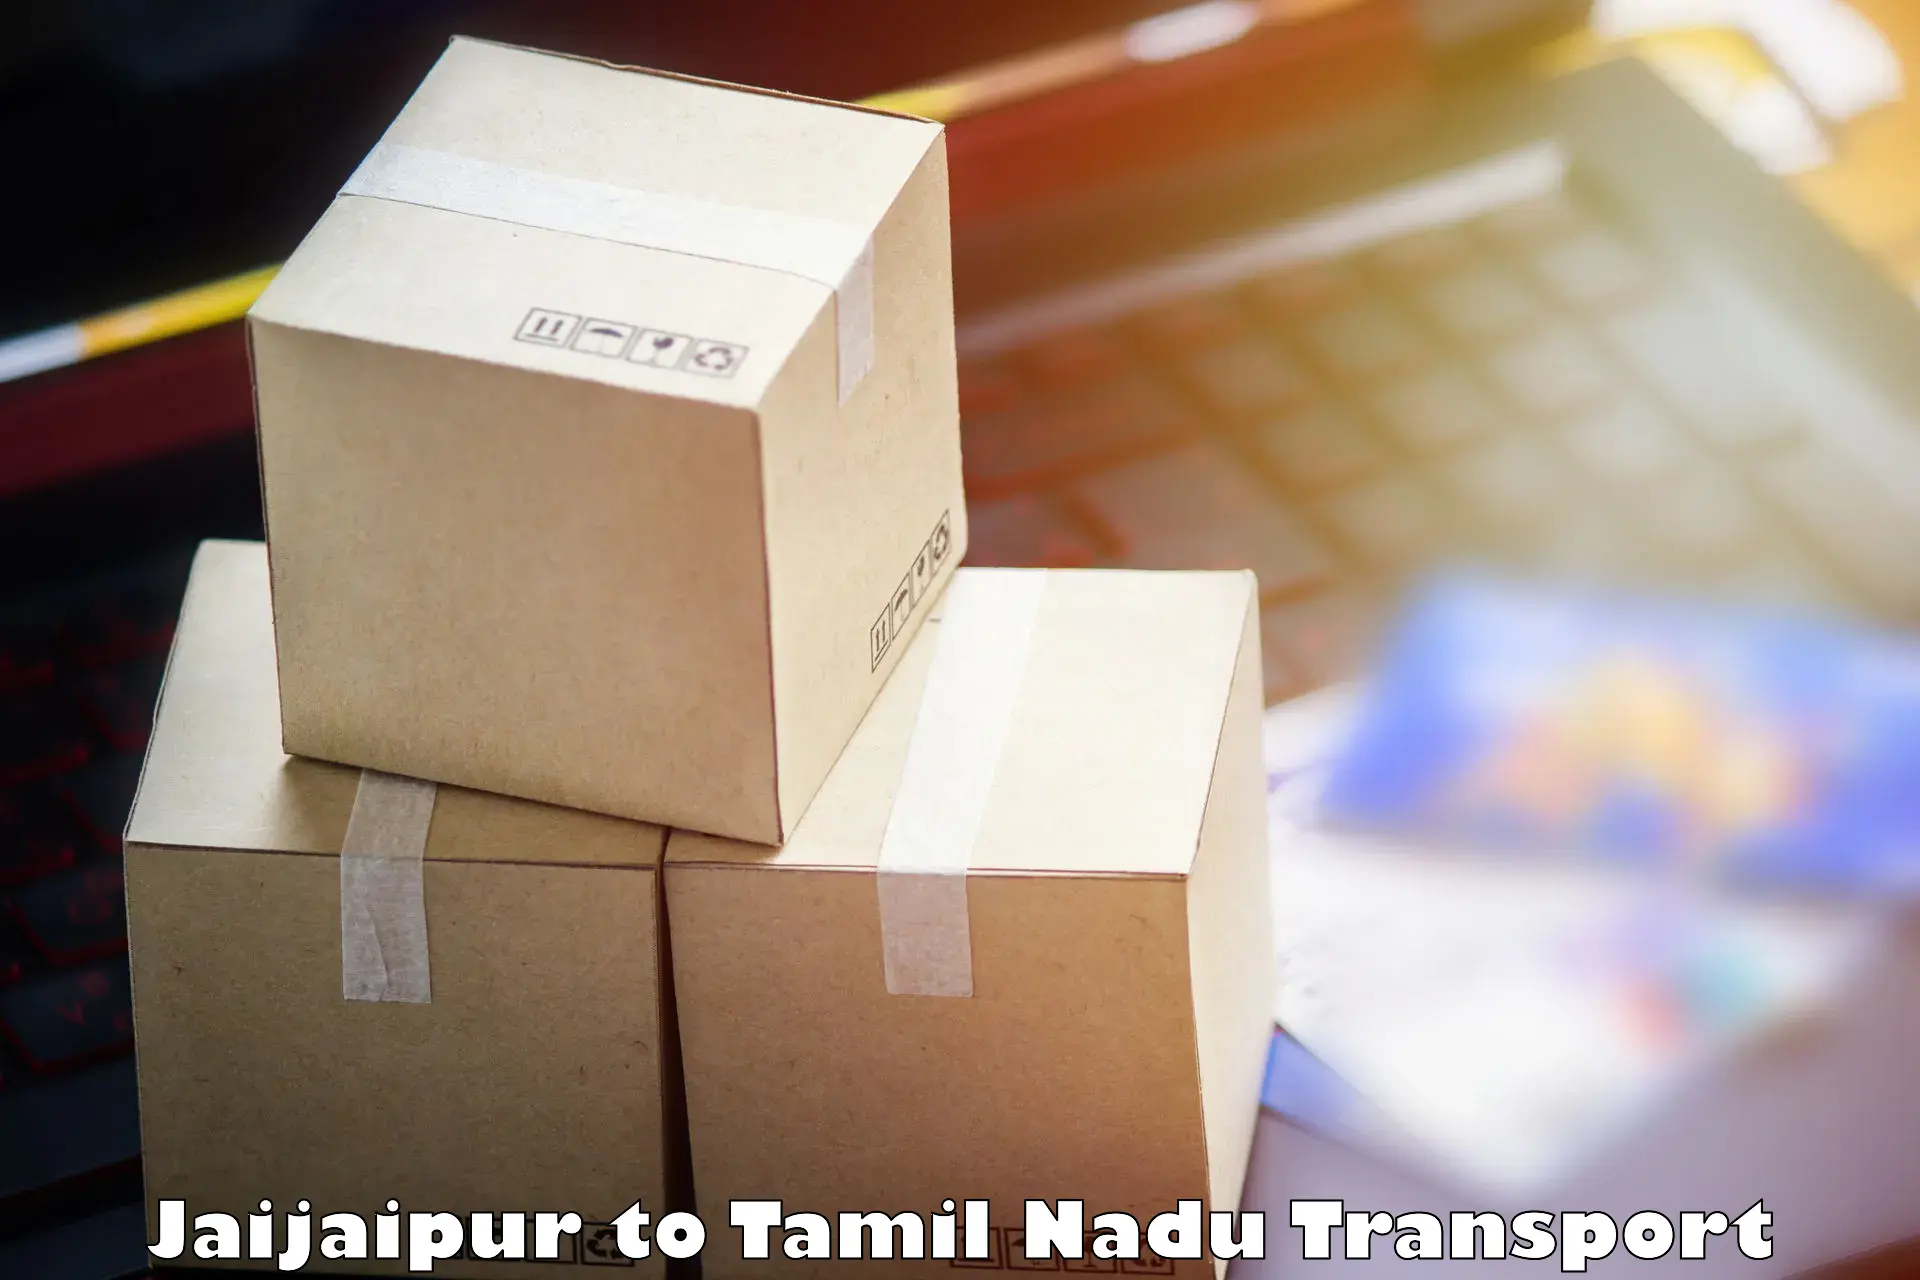 Daily parcel service transport Jaijaipur to Karambakkudi